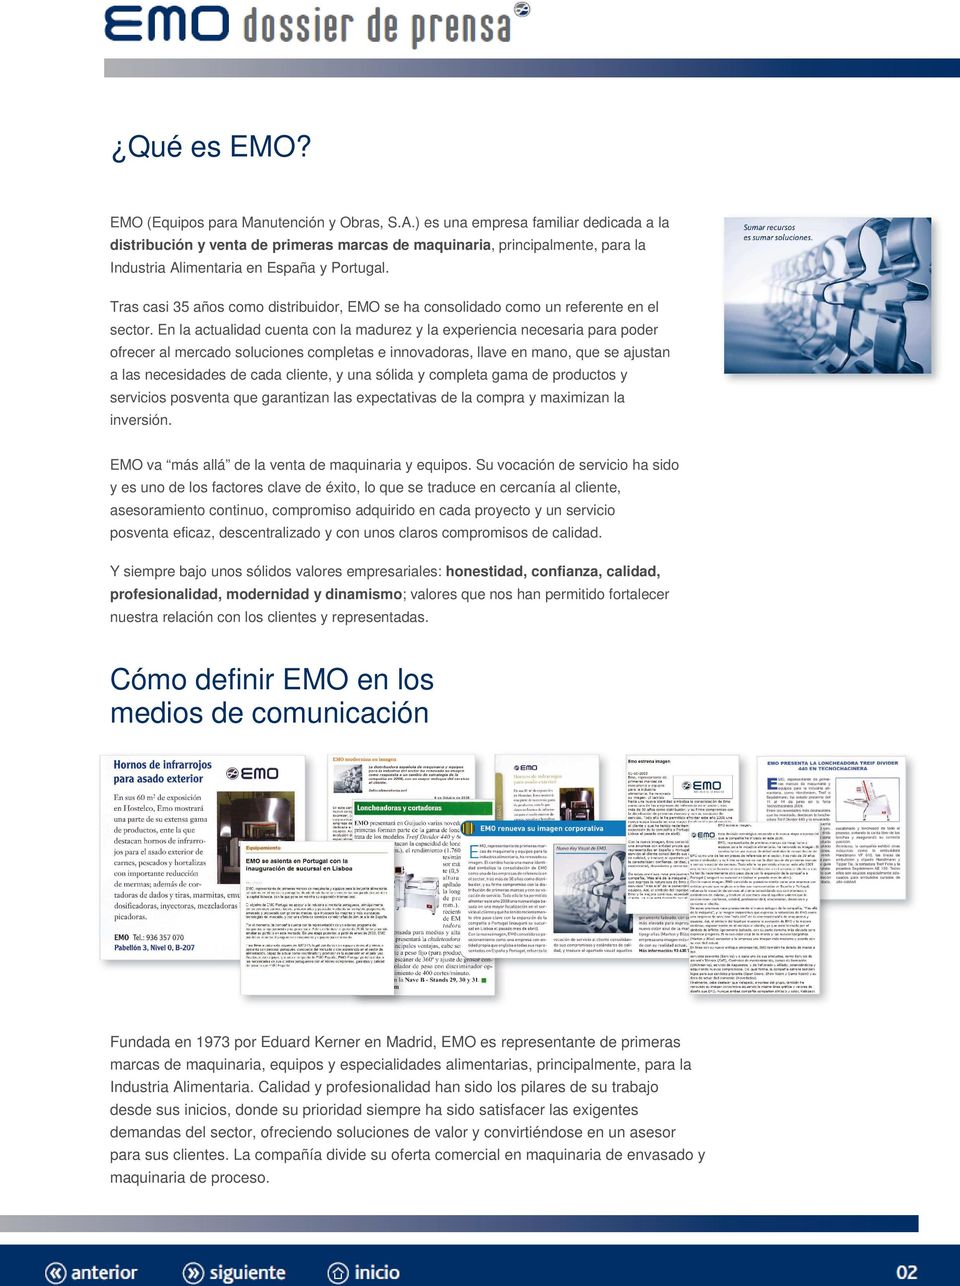 Tras casi 35 años como distribuidor, EMO se ha consolidado como un referente en el sector.